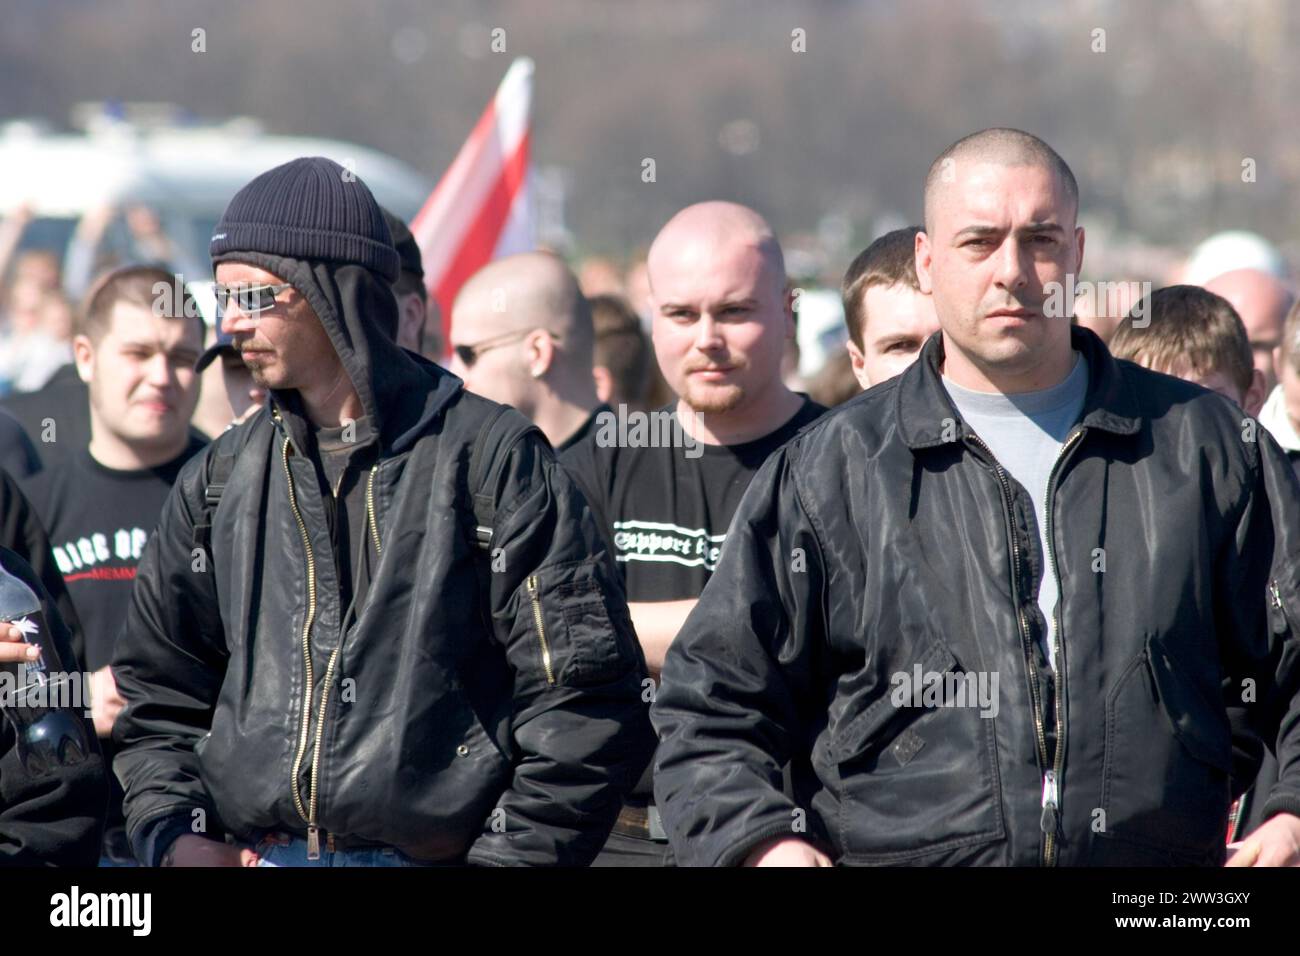 Neofaschisten bei Demonstration der Partei NPD auf der Theresienwiese München Bayern Deutschland Stockfoto